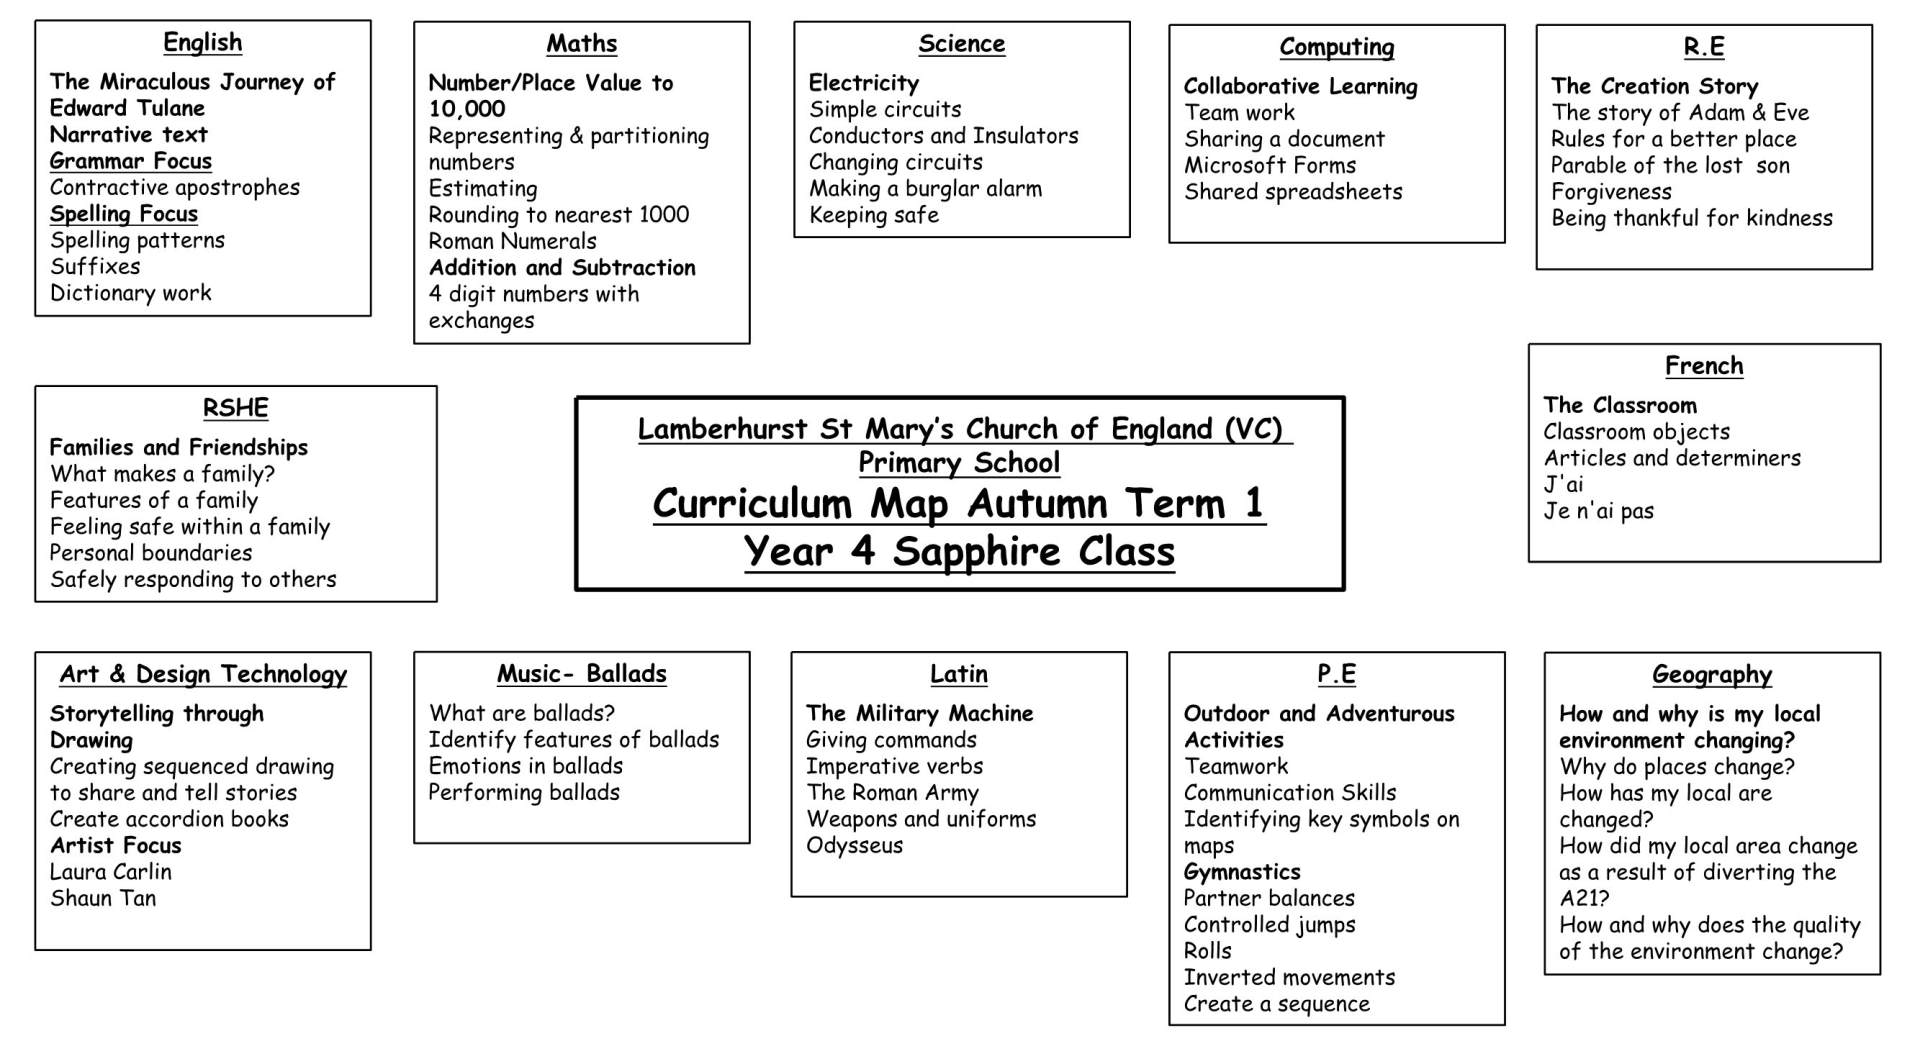 Y4 Curriculum Map Term 1